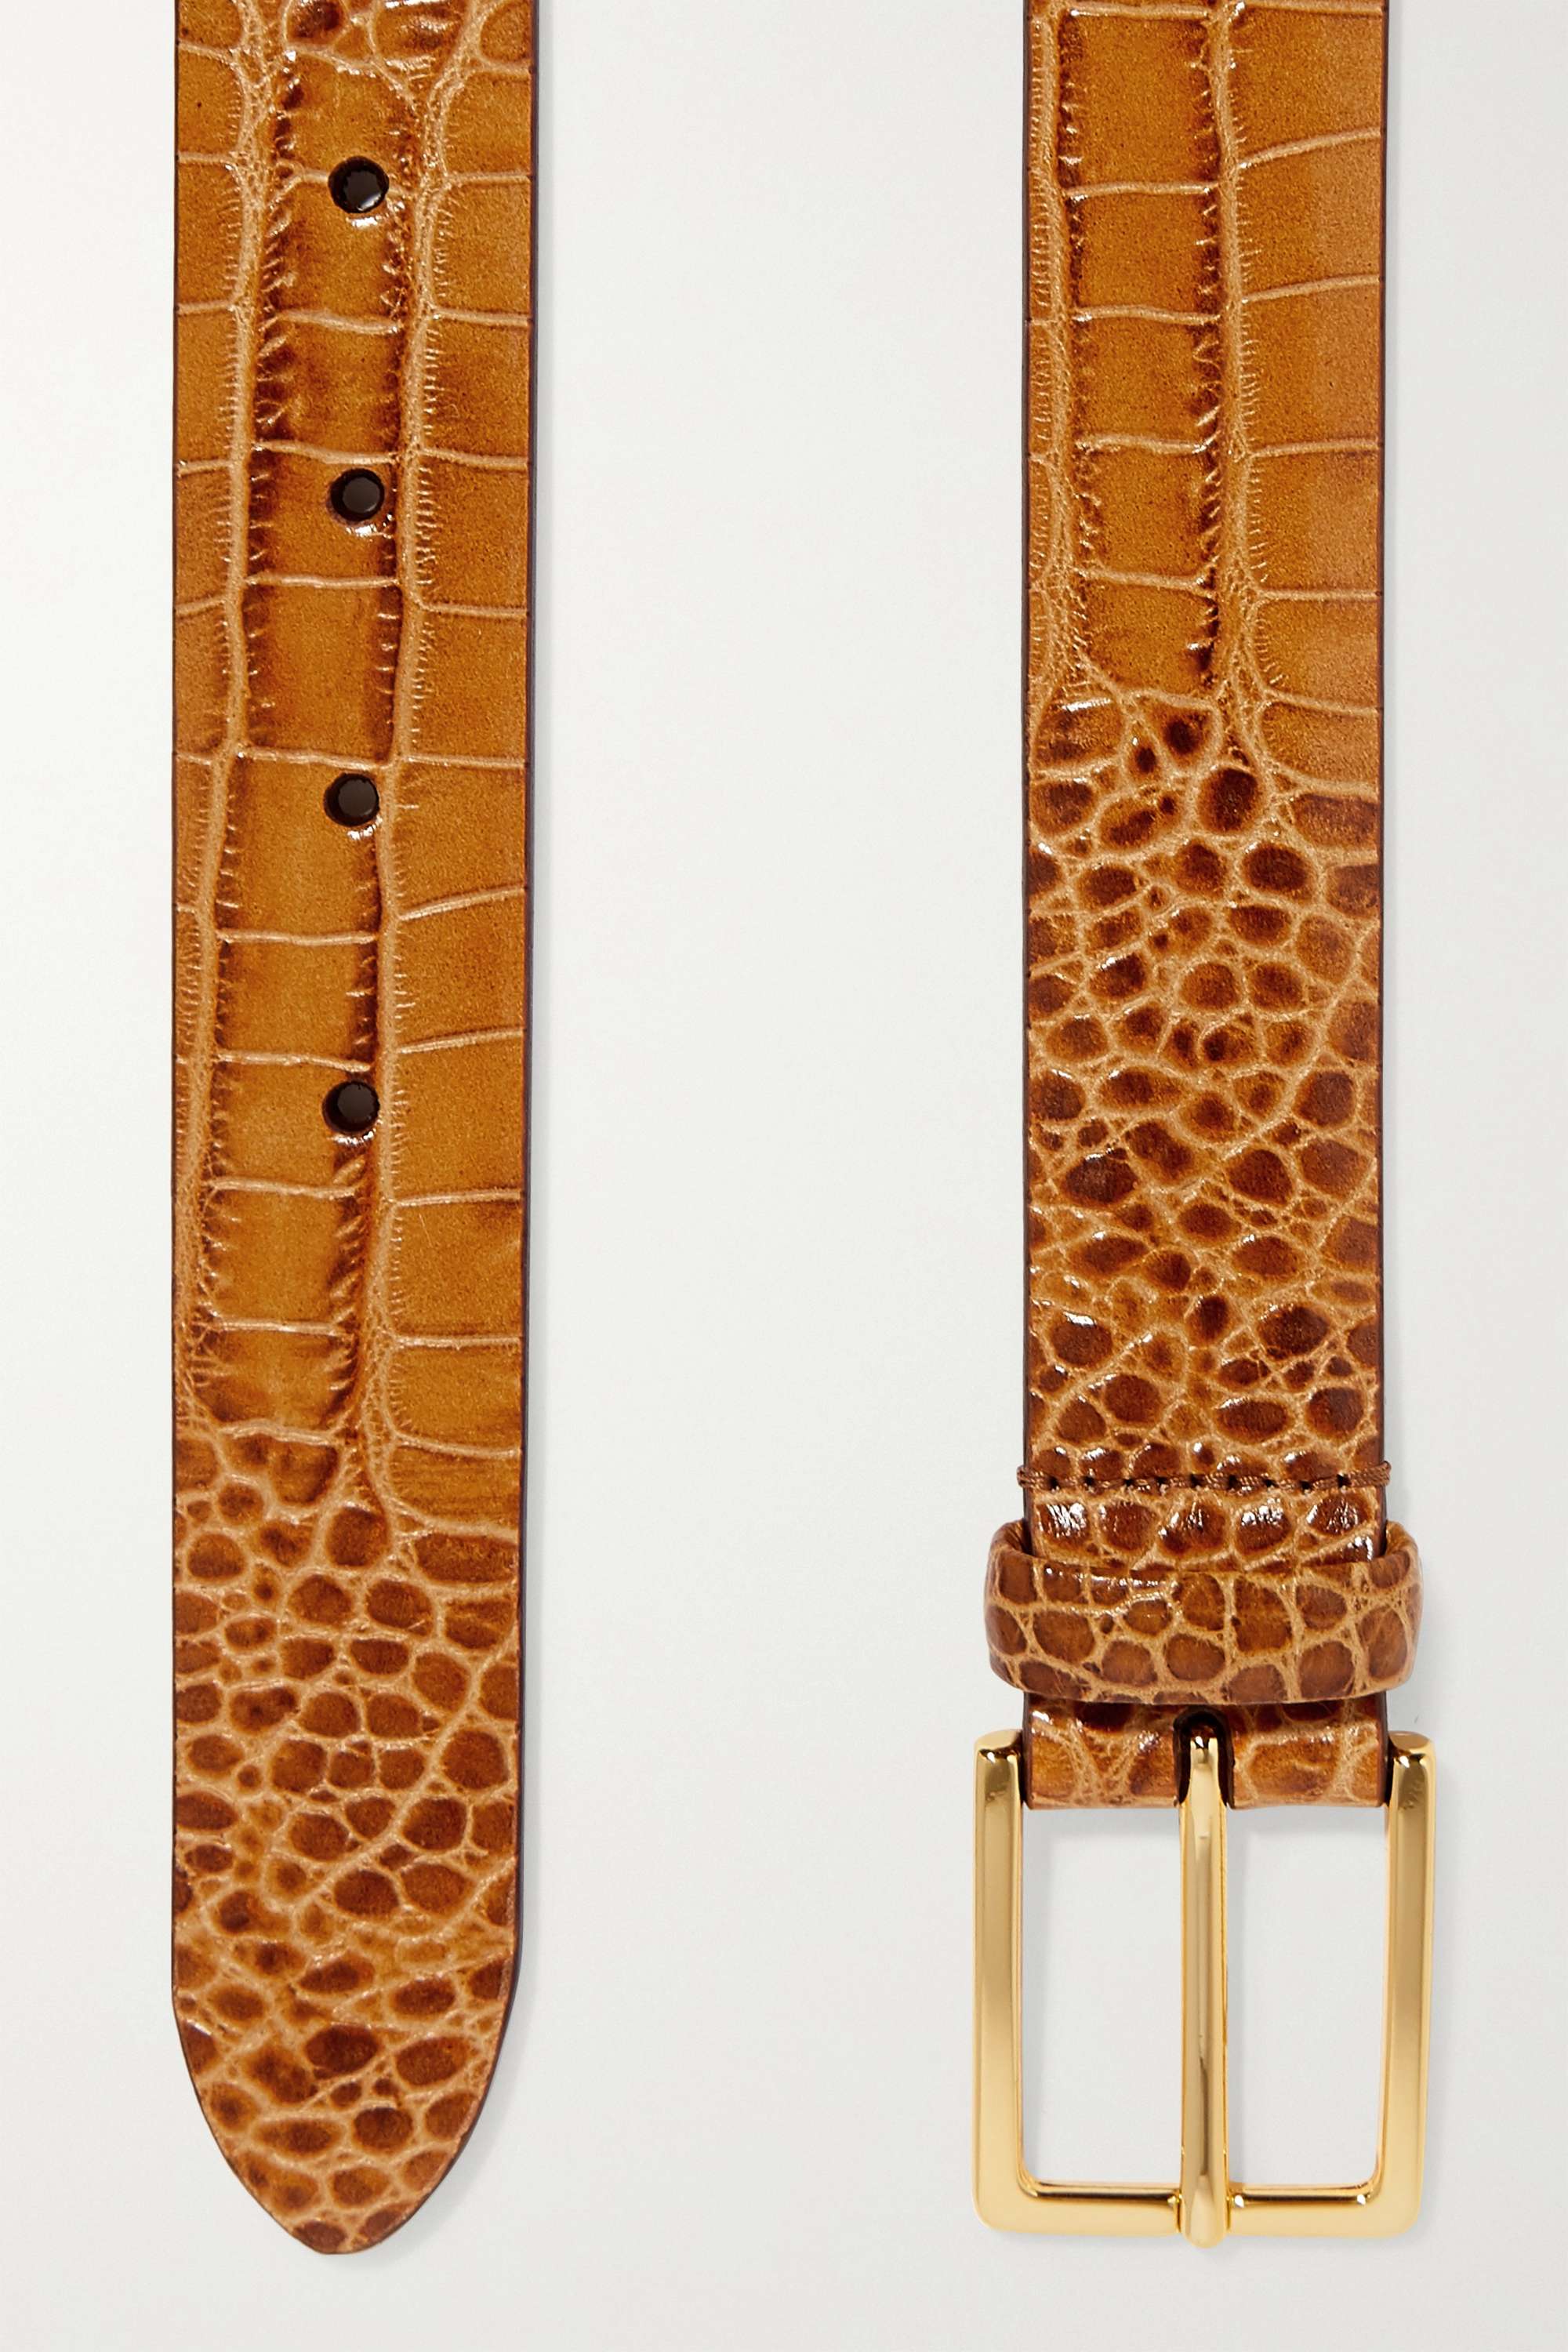 ANDERSON'S Ремень из кожи с эффектом крокодила, бежевый ремень из кожи крокодила с 2 рядами